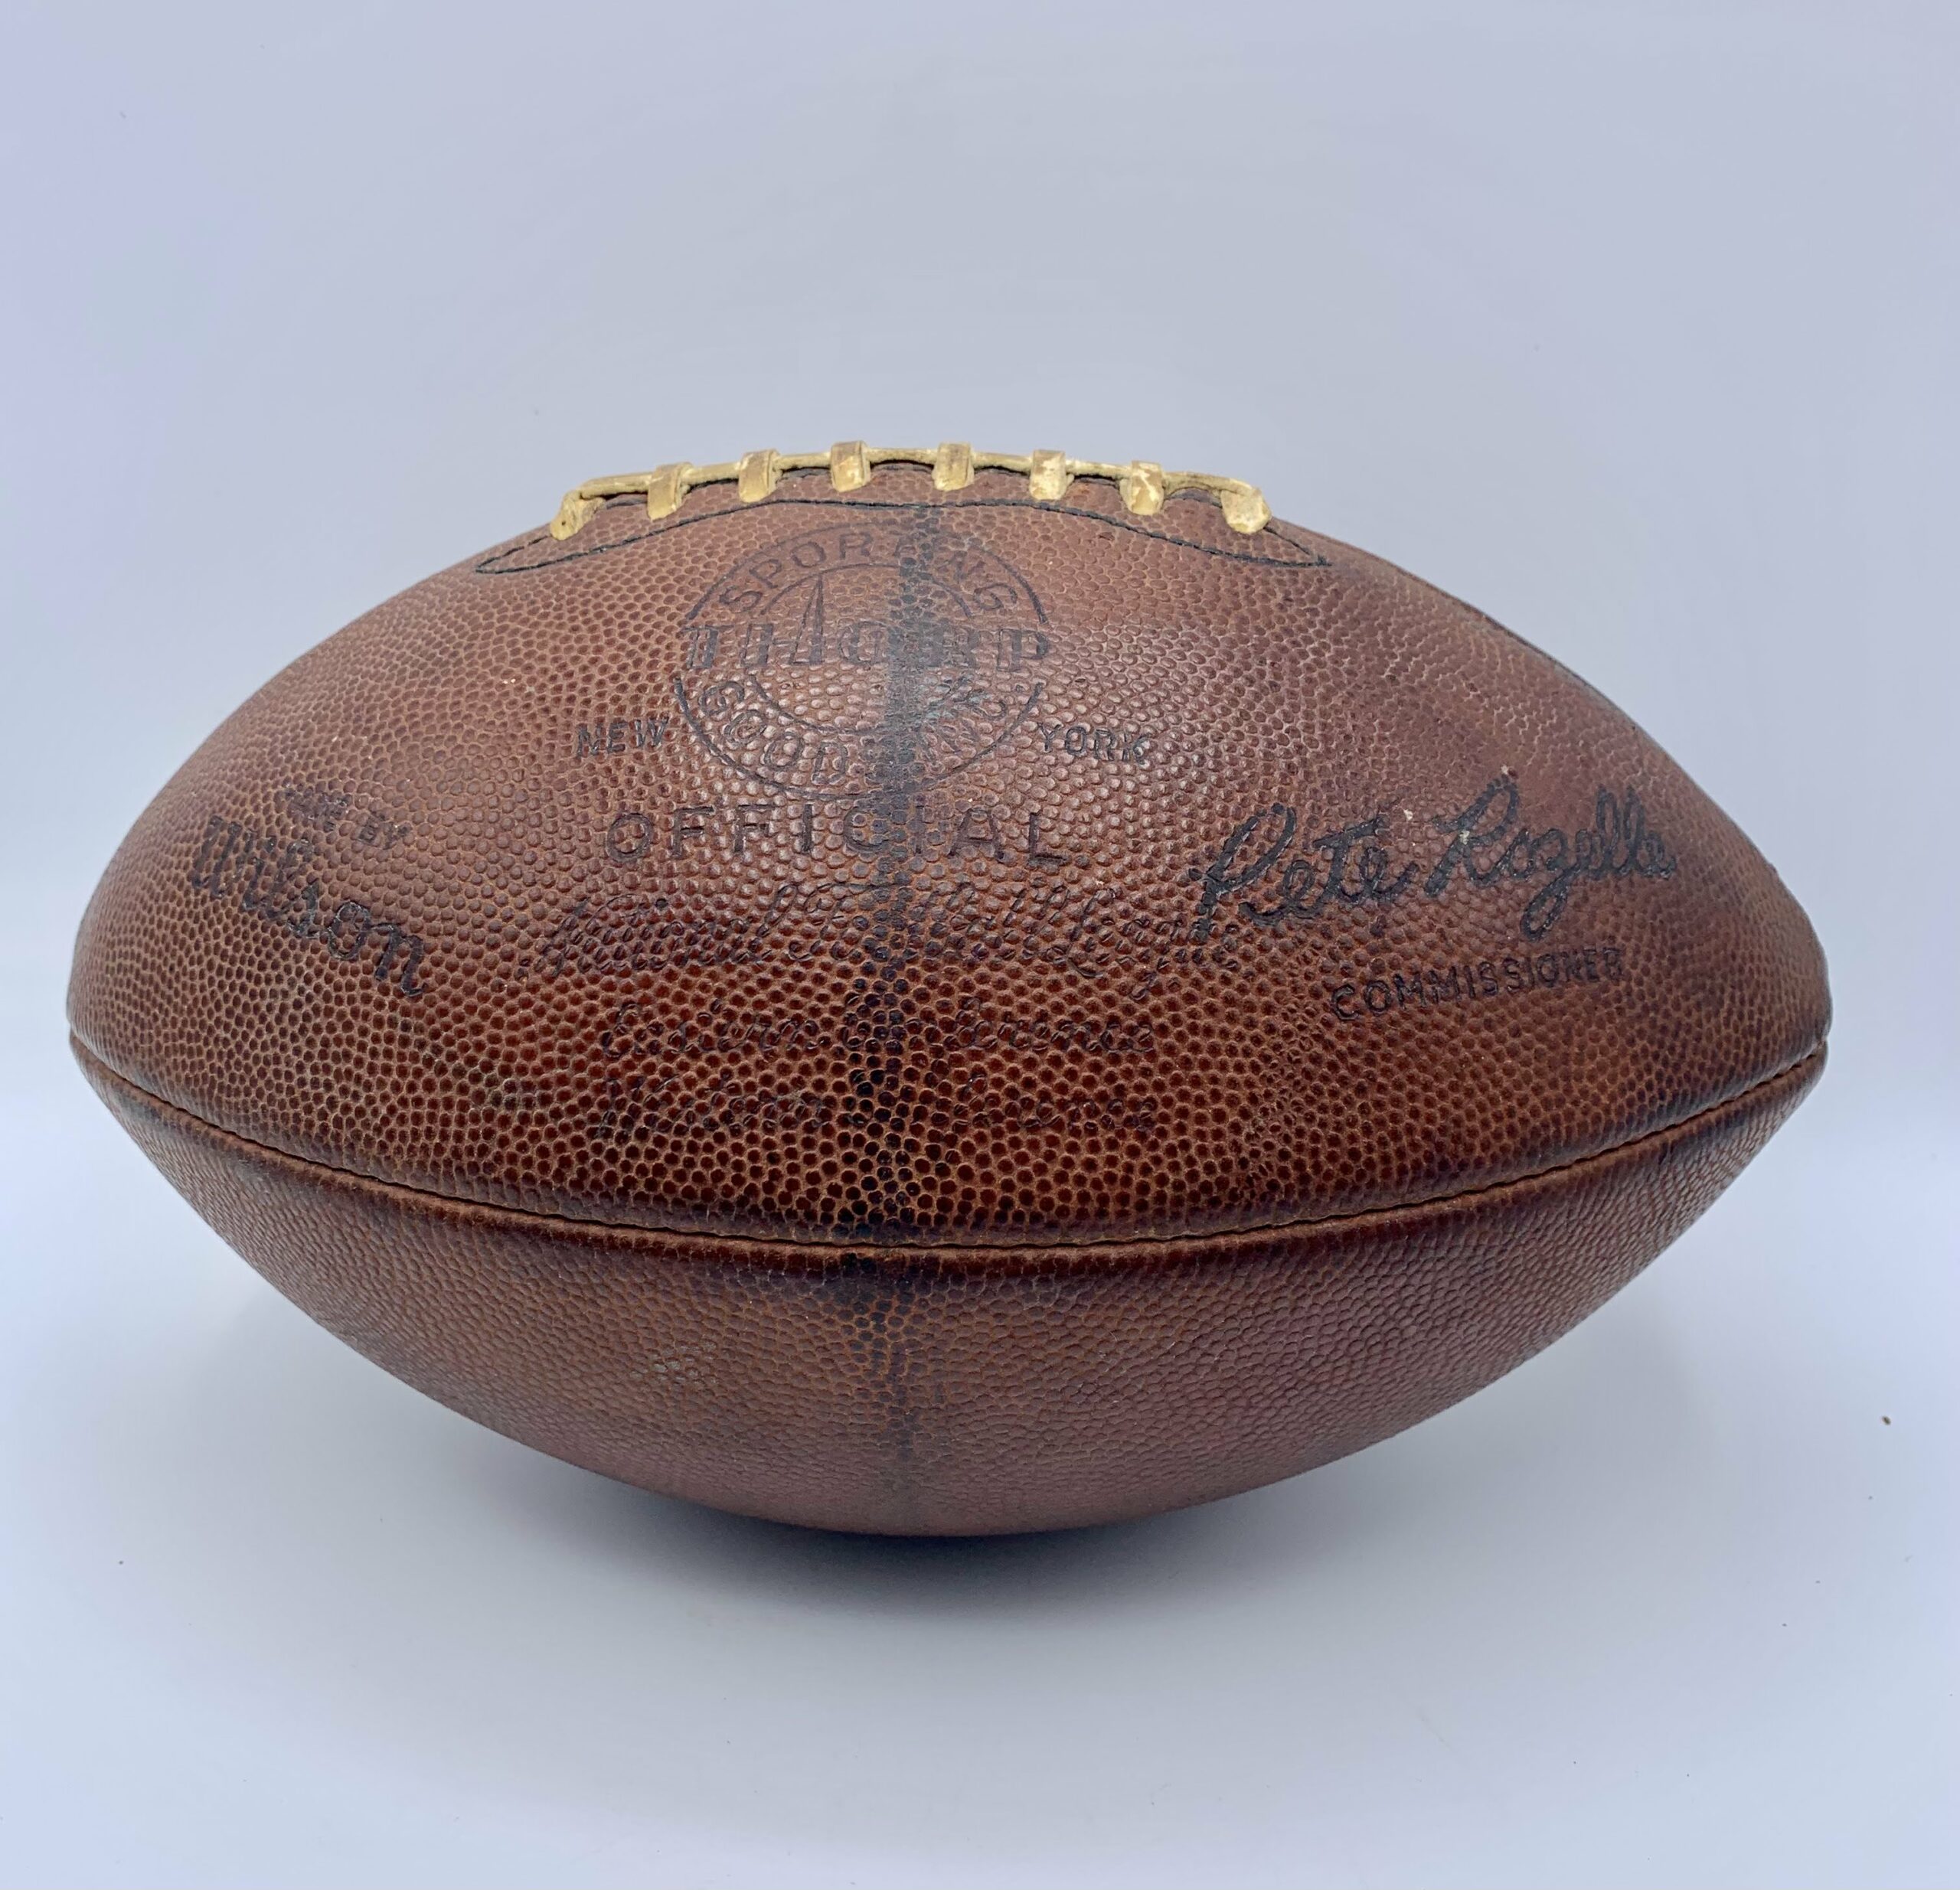 Thorp Sporting Goods - Wilson NFL Football - Rozelle - 1960's